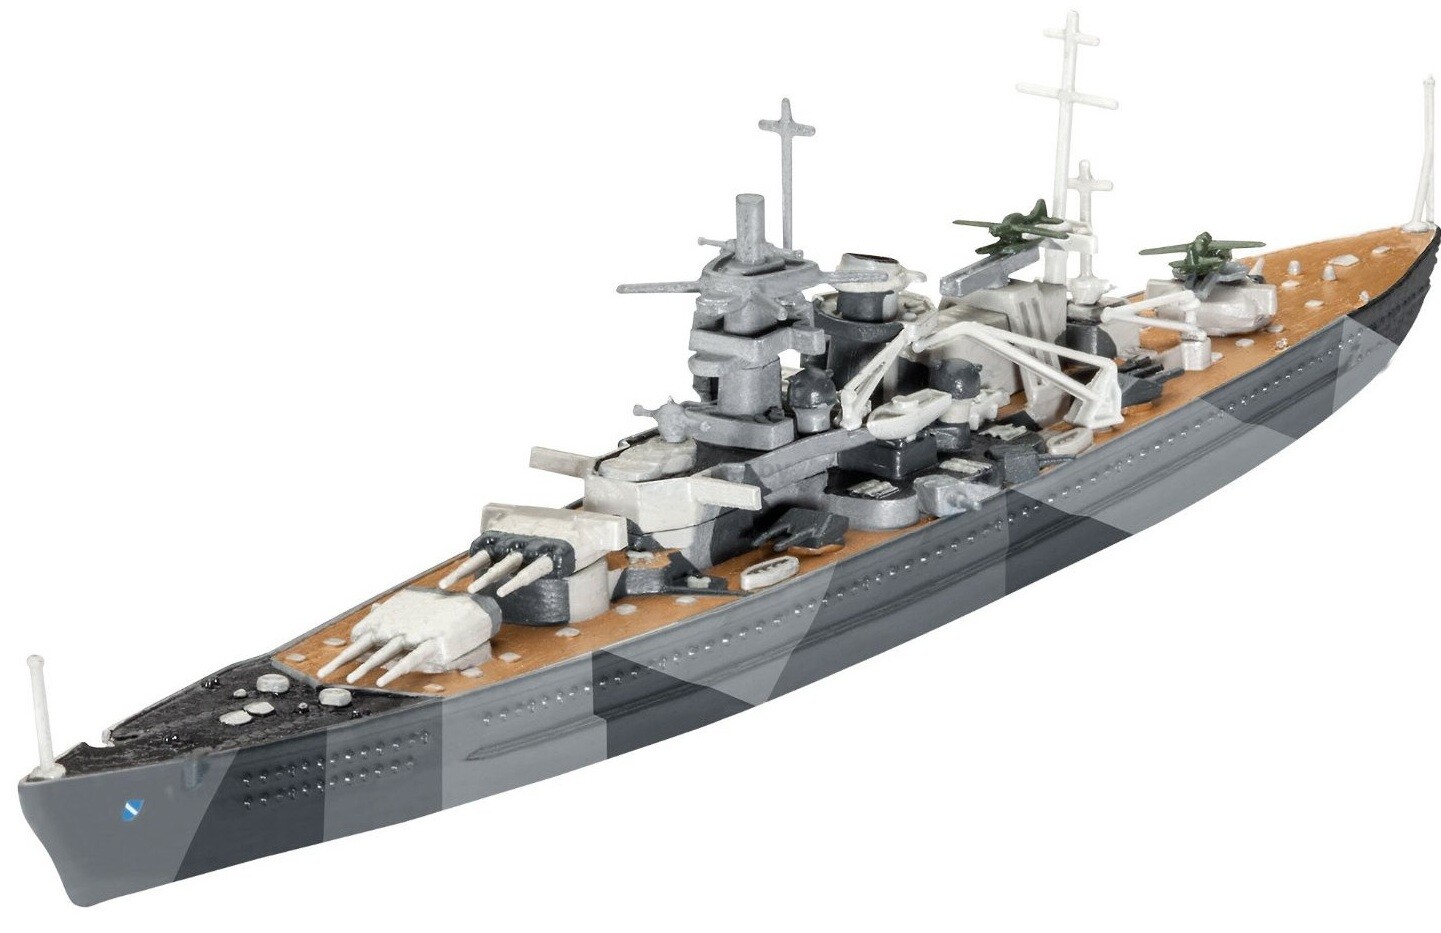 Сборная модель корабля REVELL Немецкий линкор Шарнхорст 1:1200 (65136)